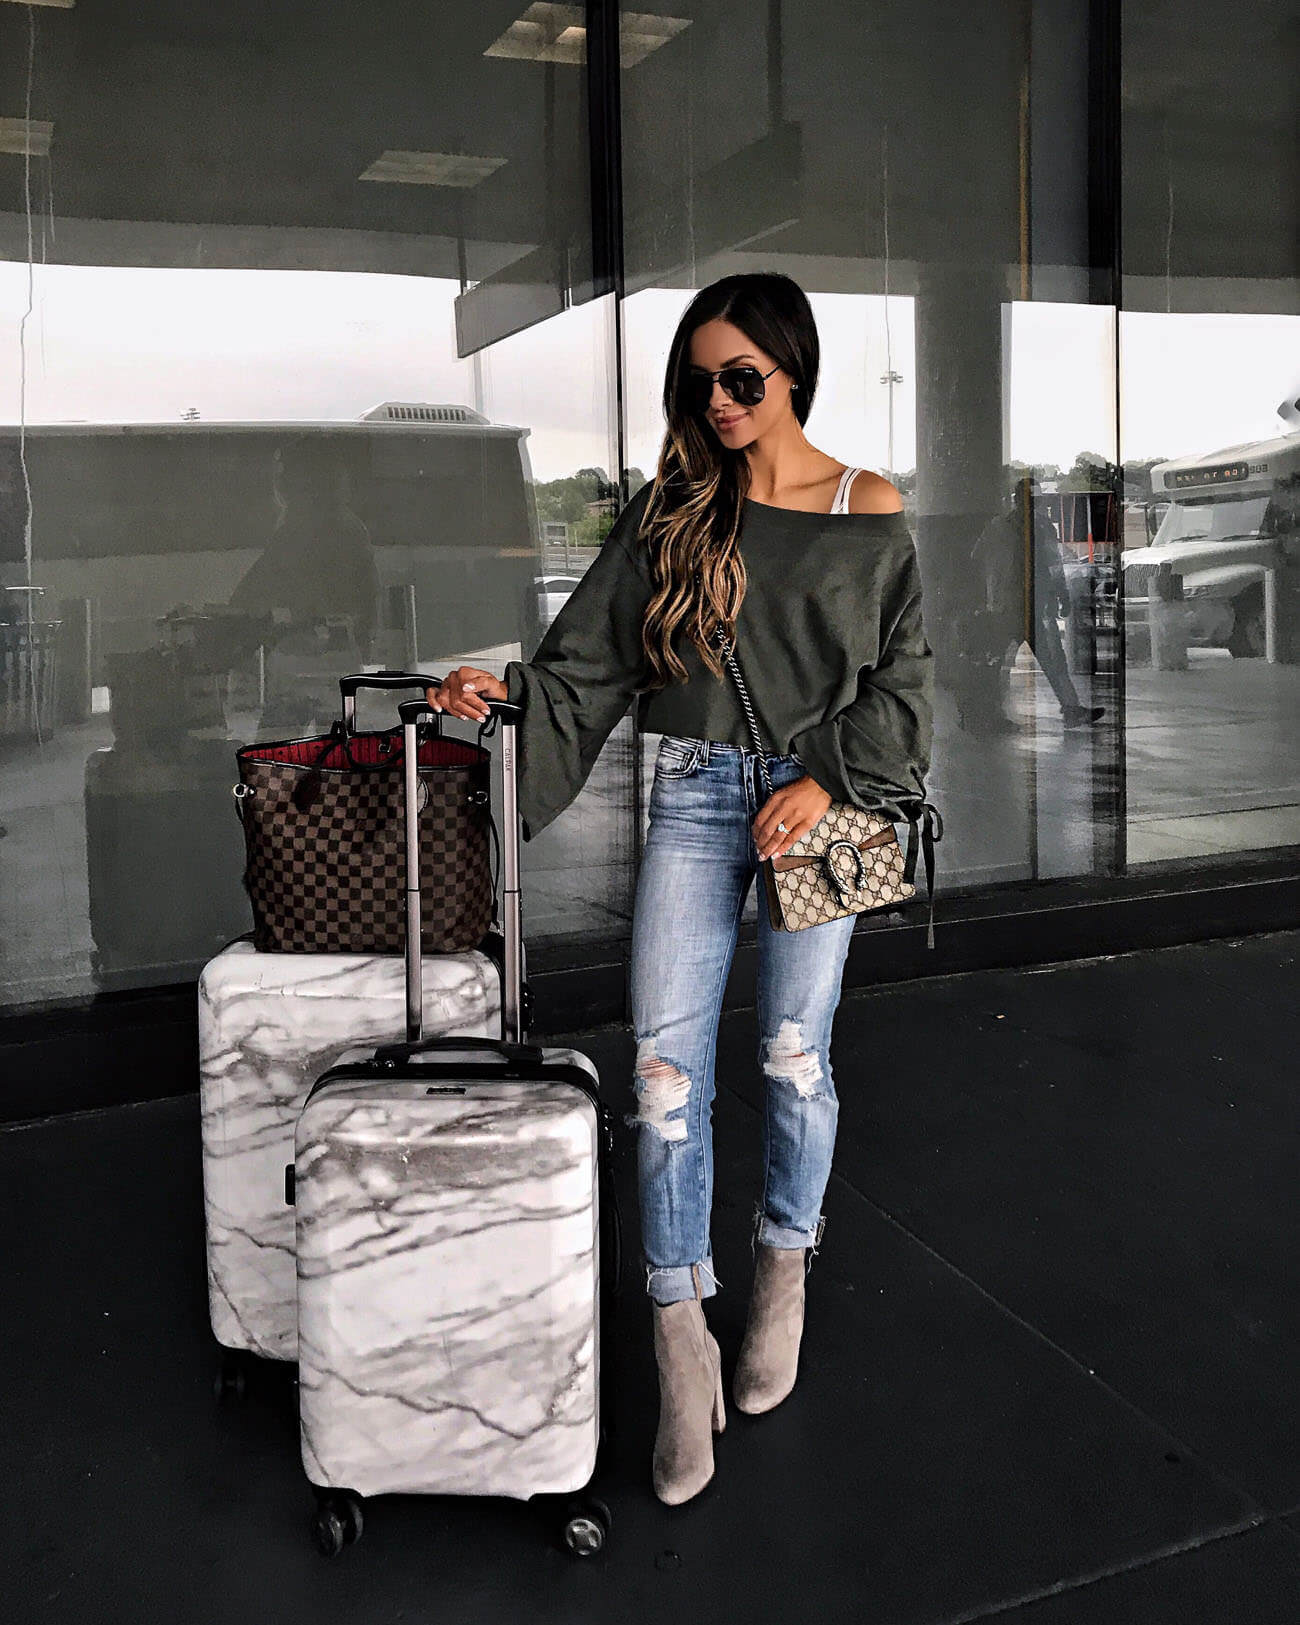 My Louis Vuitton Travel Luggage Review - Mia Mia Mine